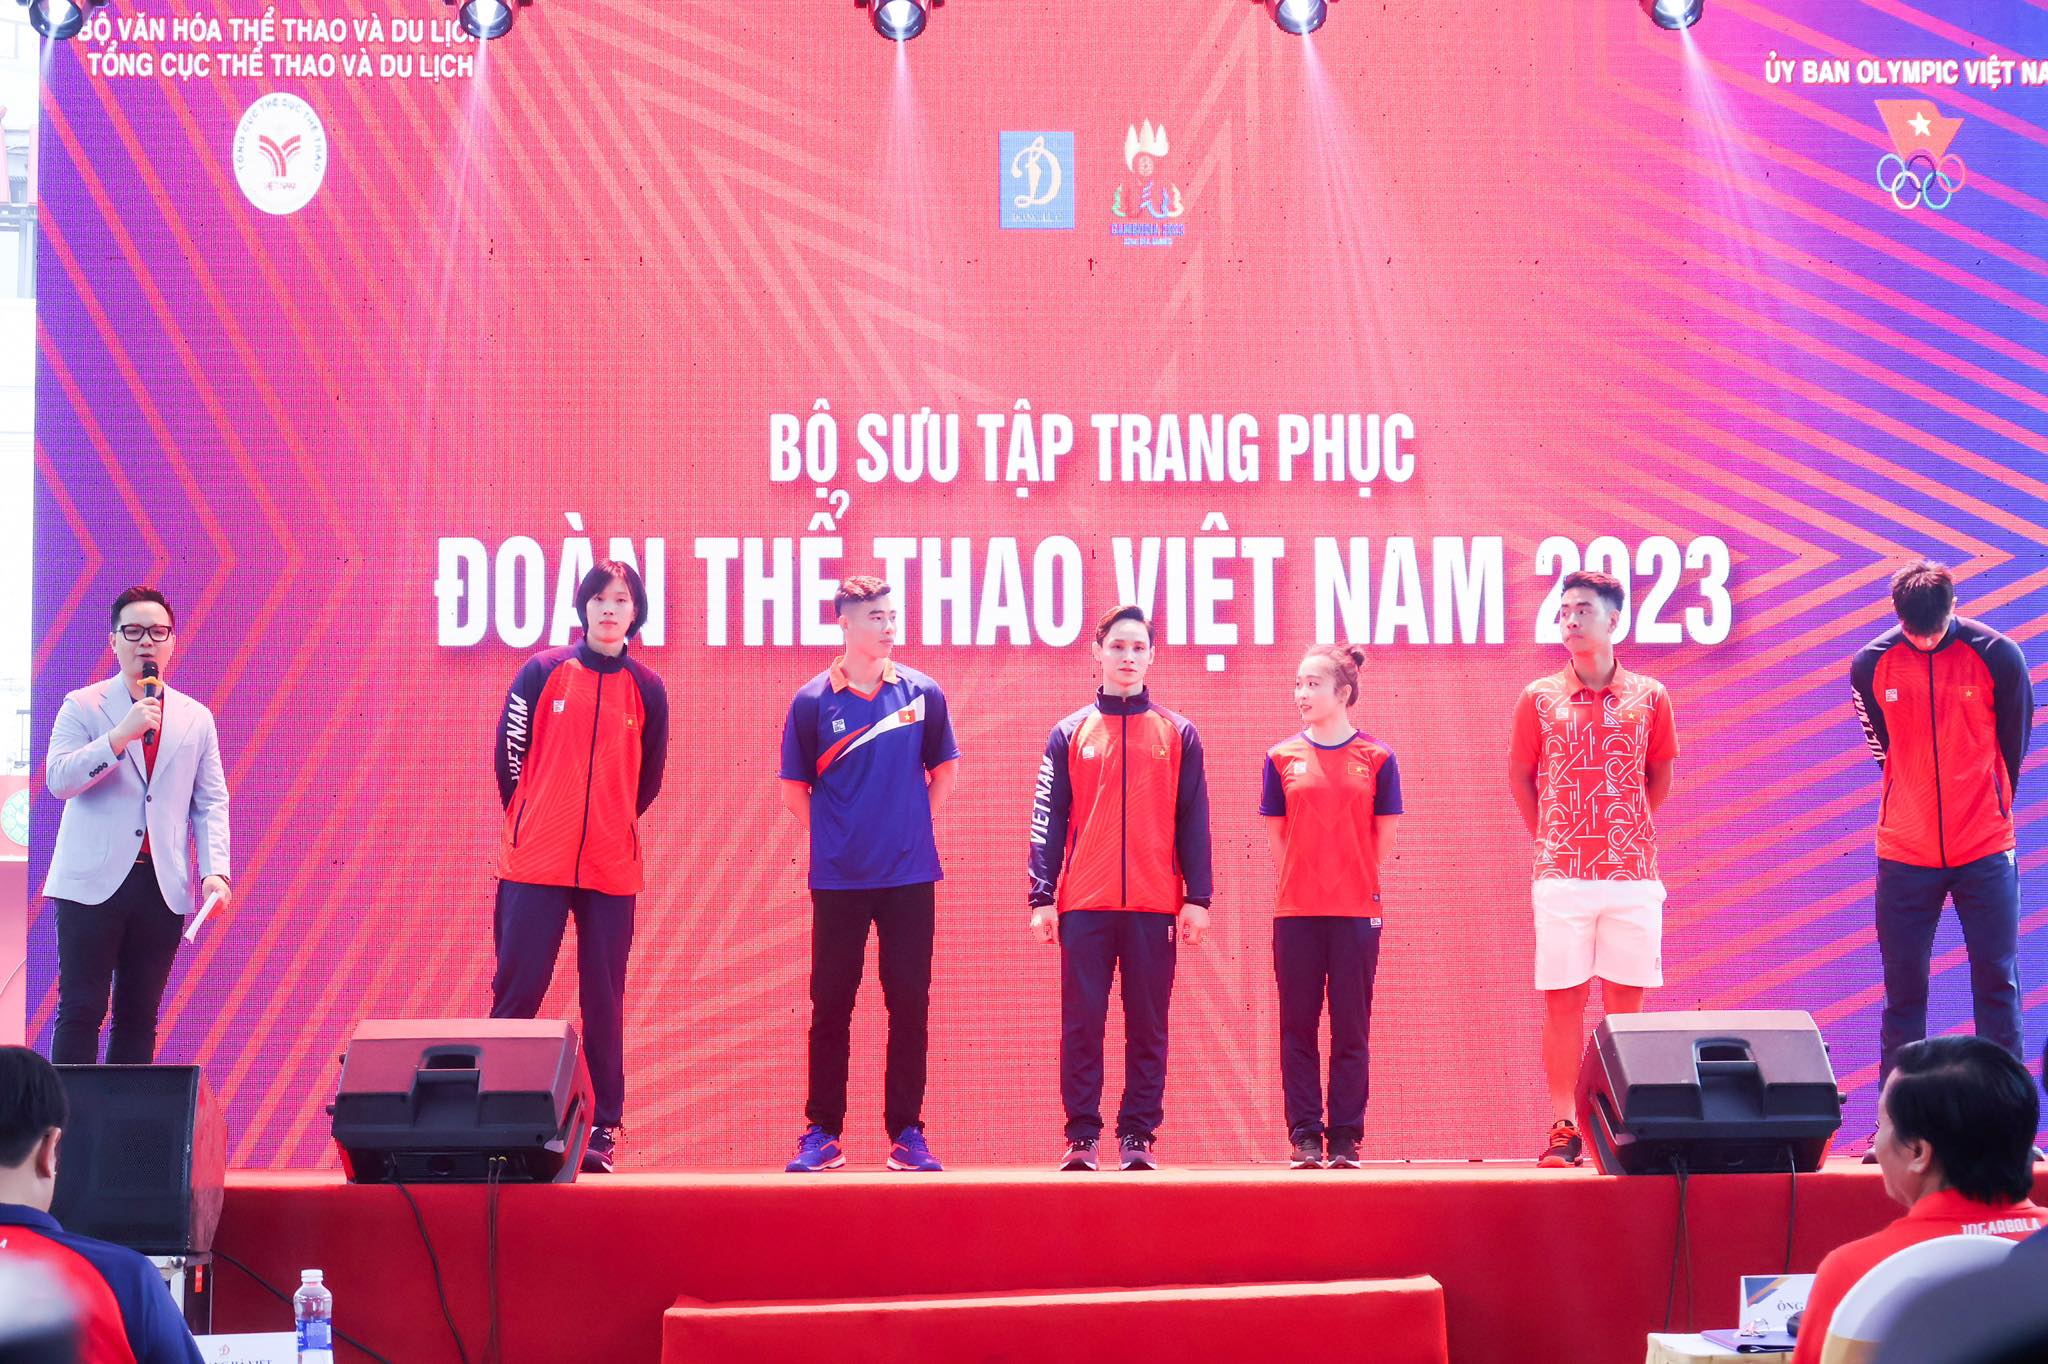 Trang phục chính thức của Đoàn thể thao Việt Nam ở SEA Games 32 - Ảnh: Đức Cường 